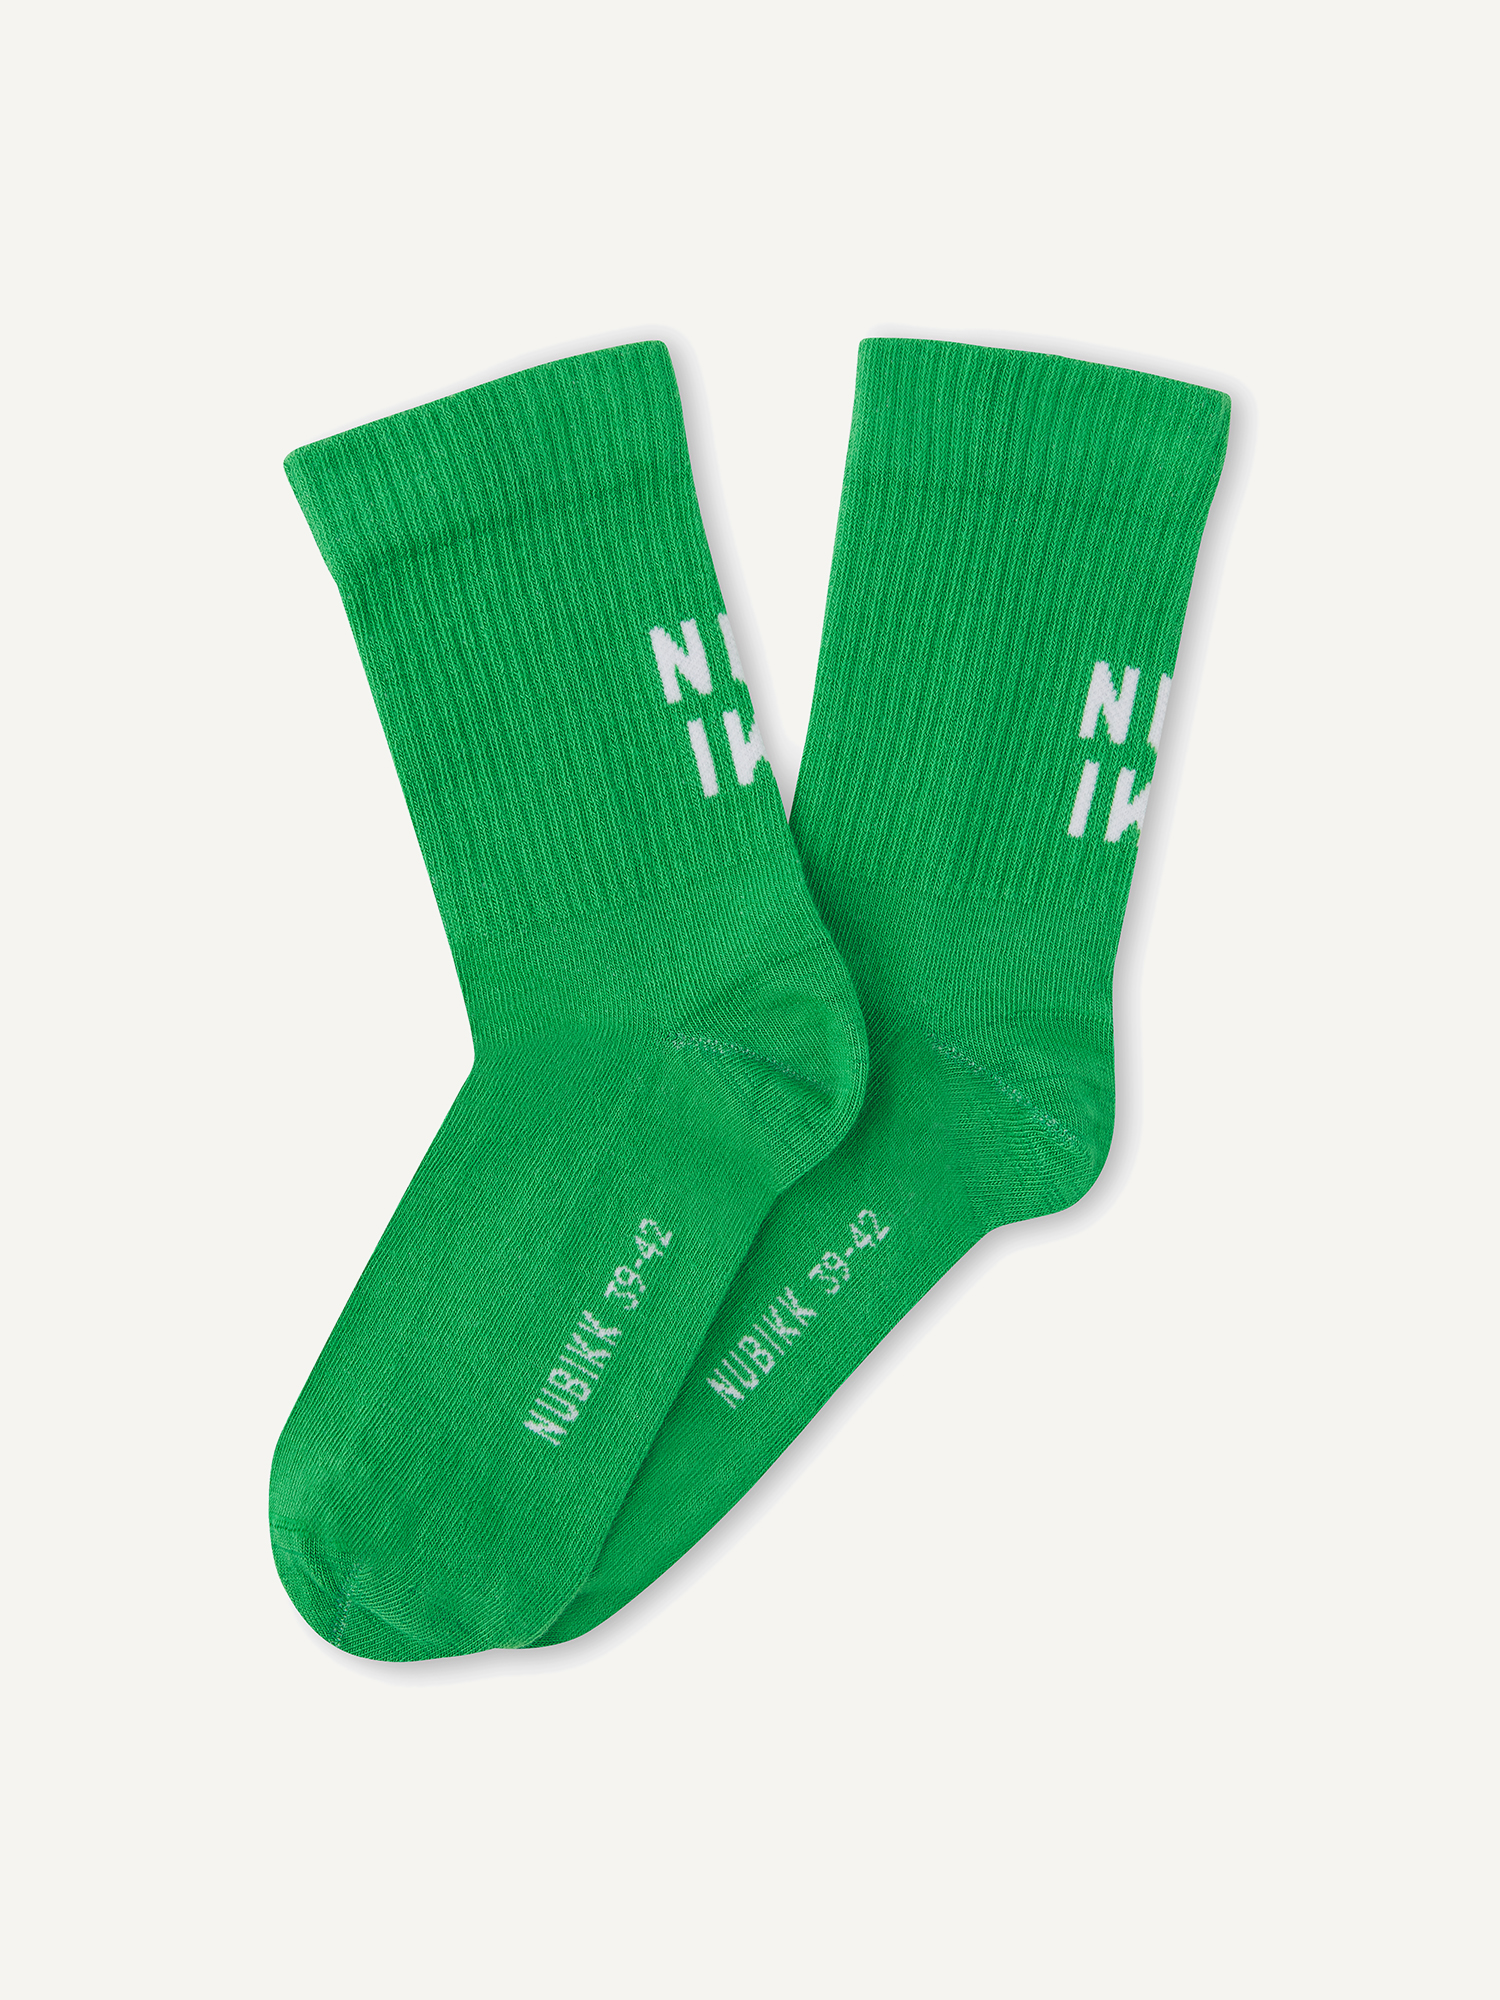 Nova Socks | Green socks for women